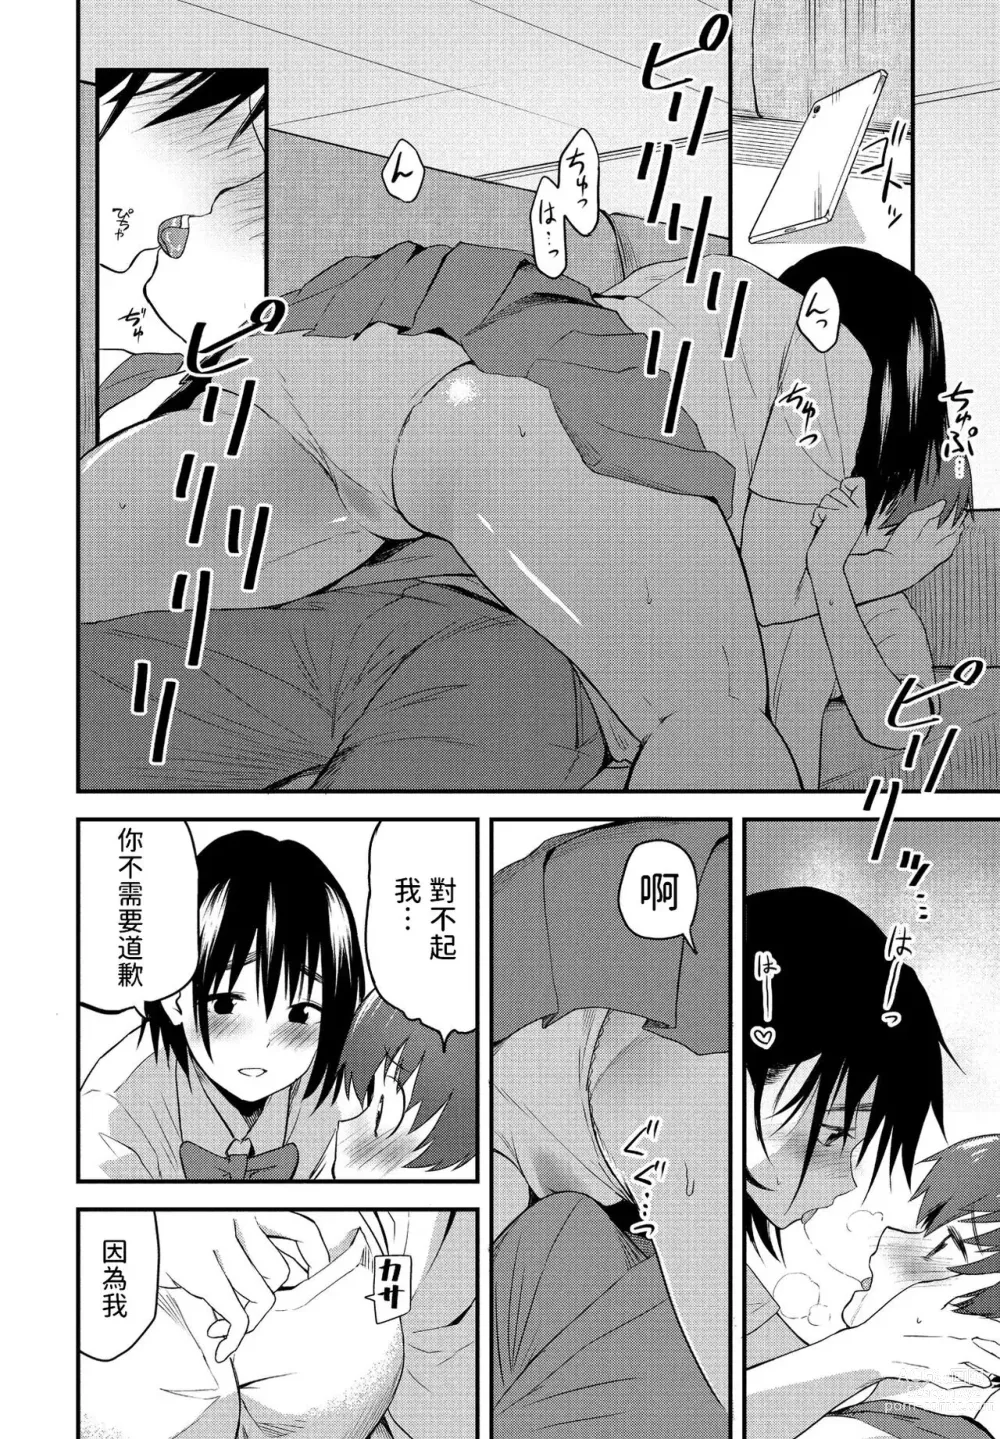 Page 8 of manga Massugu na Kimi ga Suki